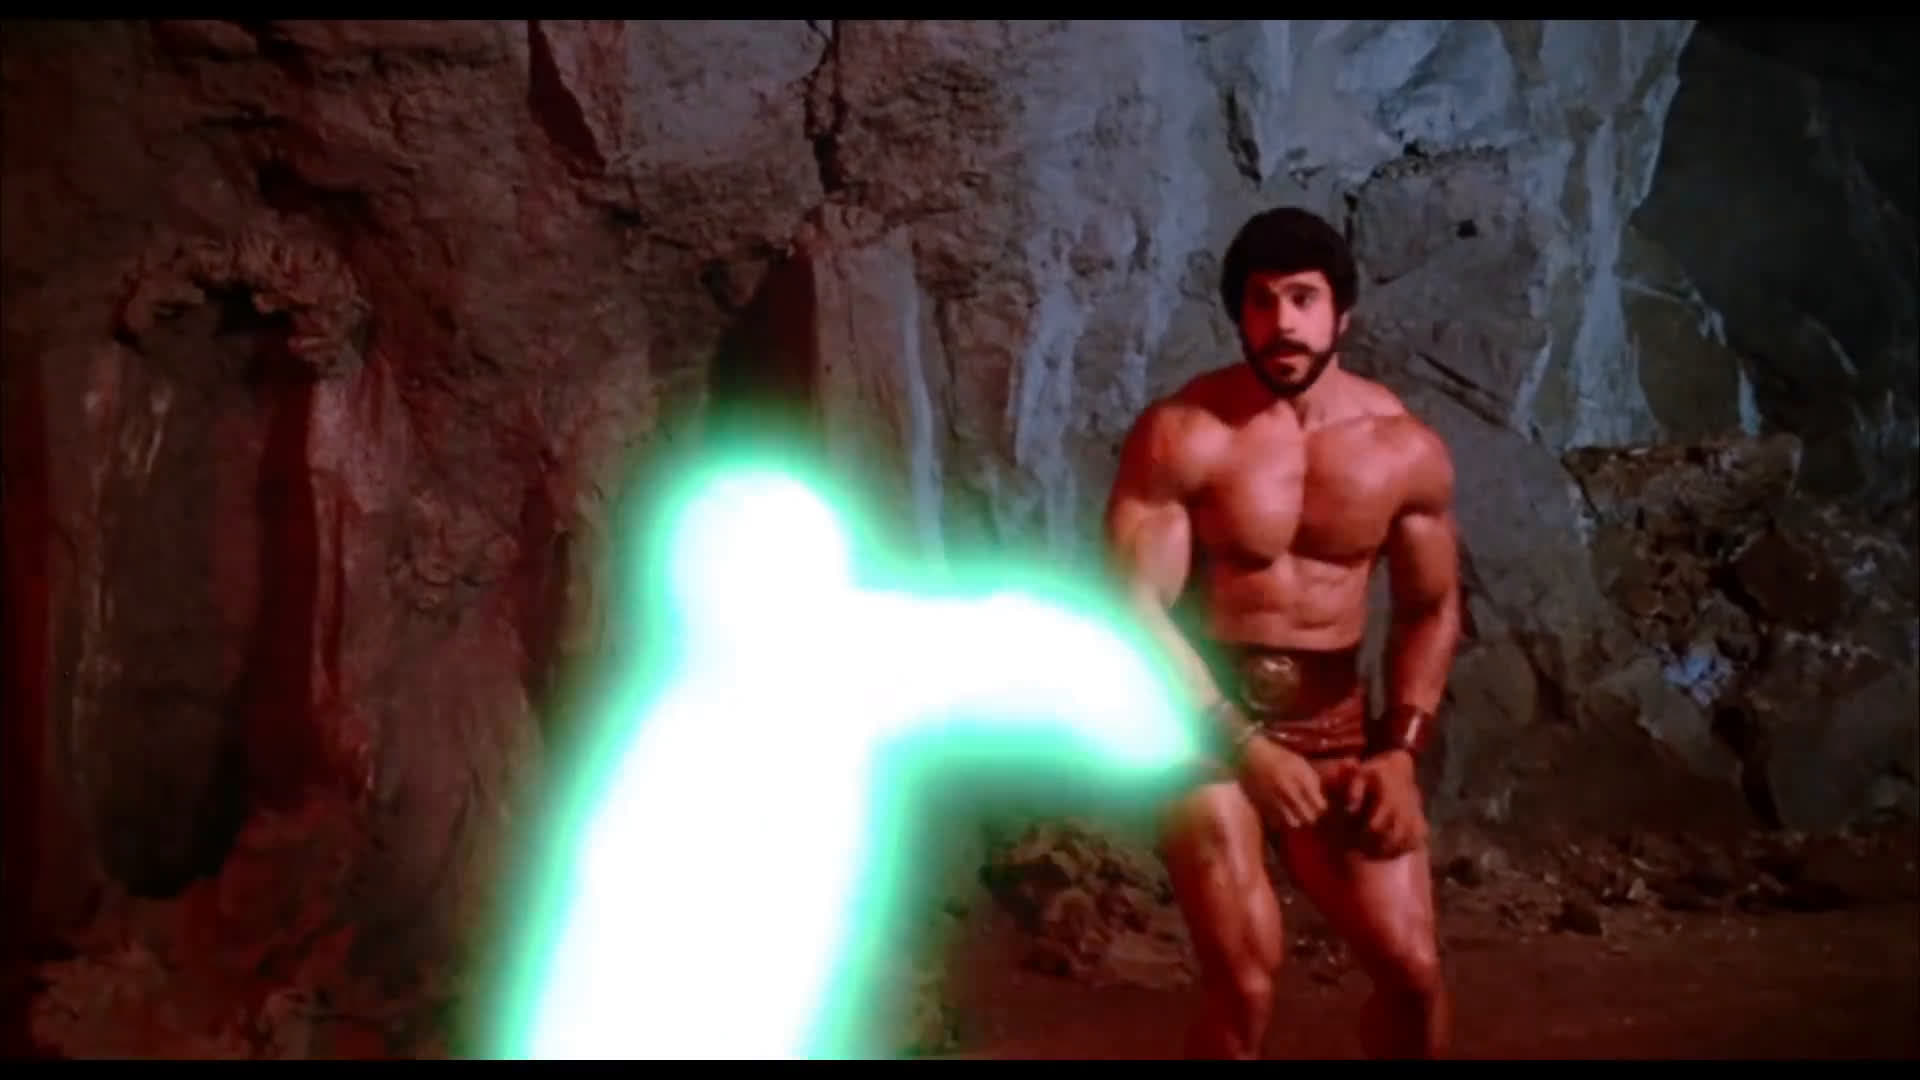 Hercules (1983)